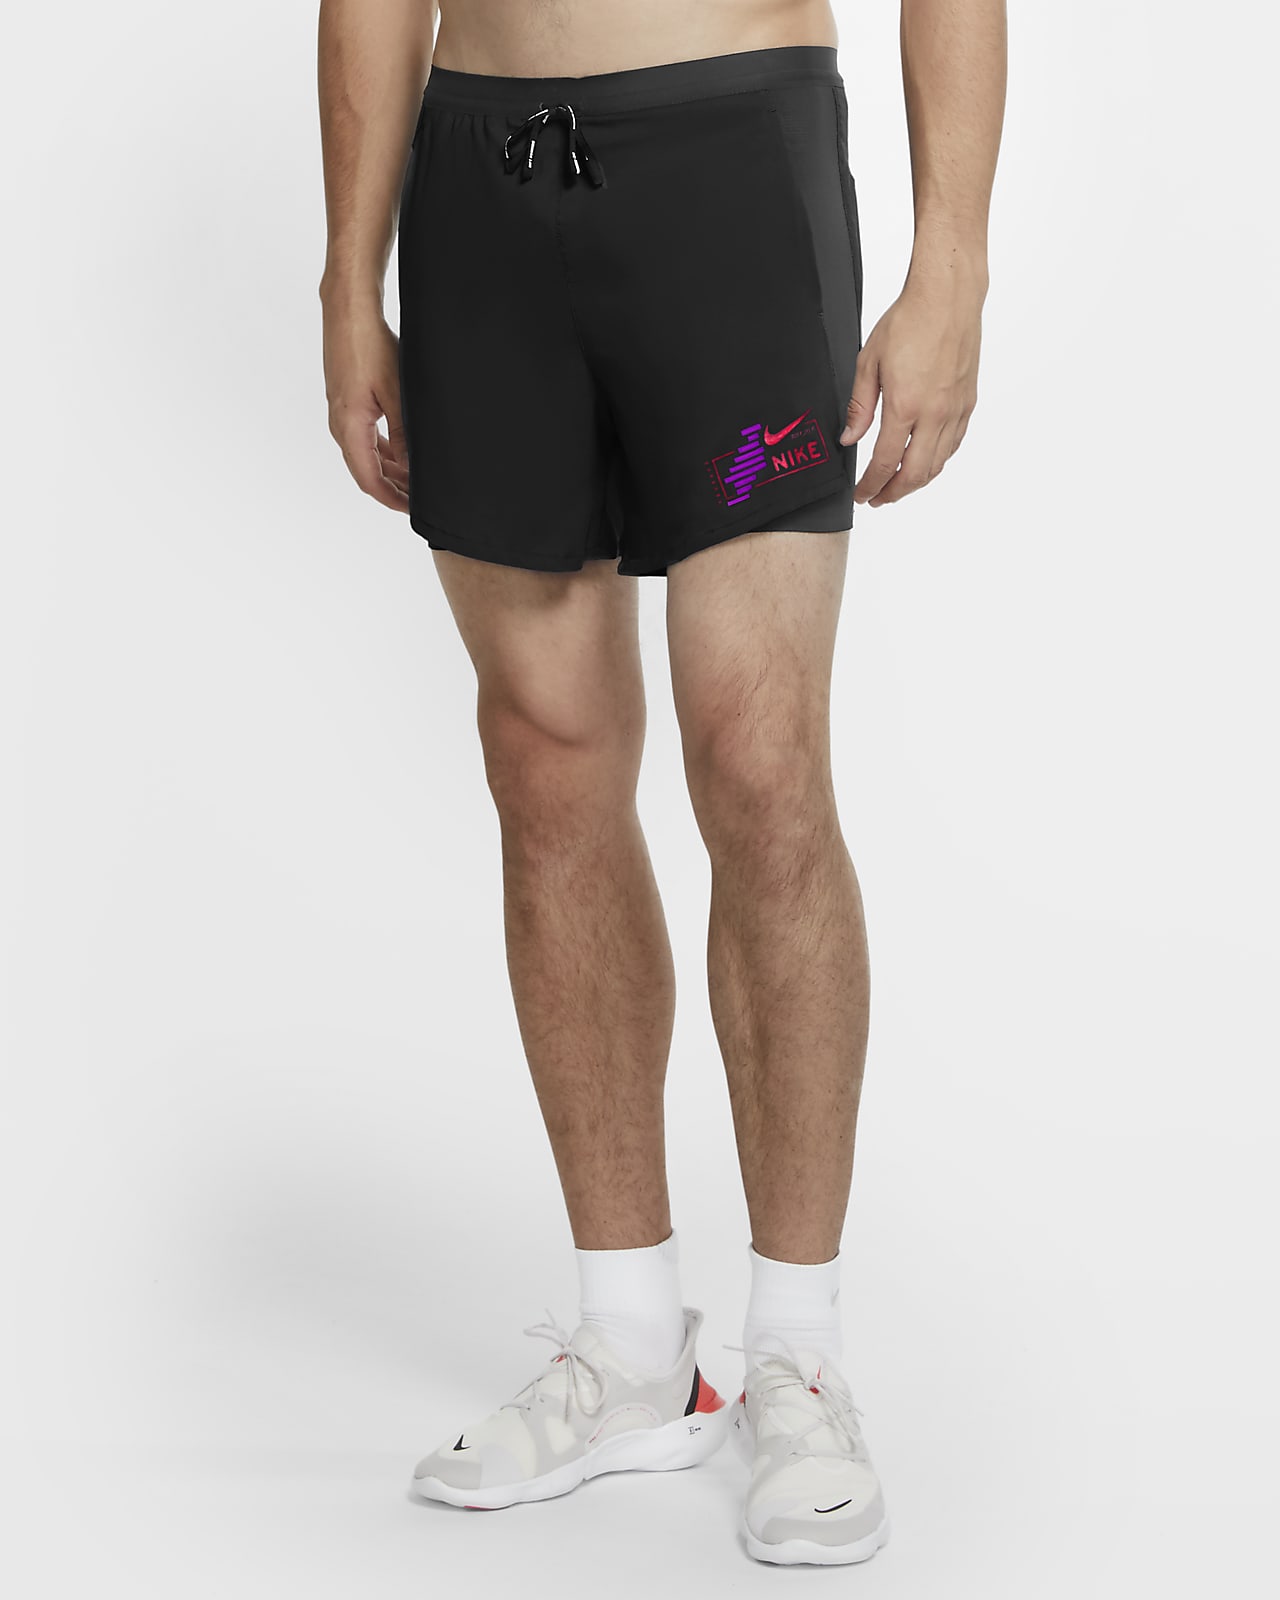 buy nike running shorts